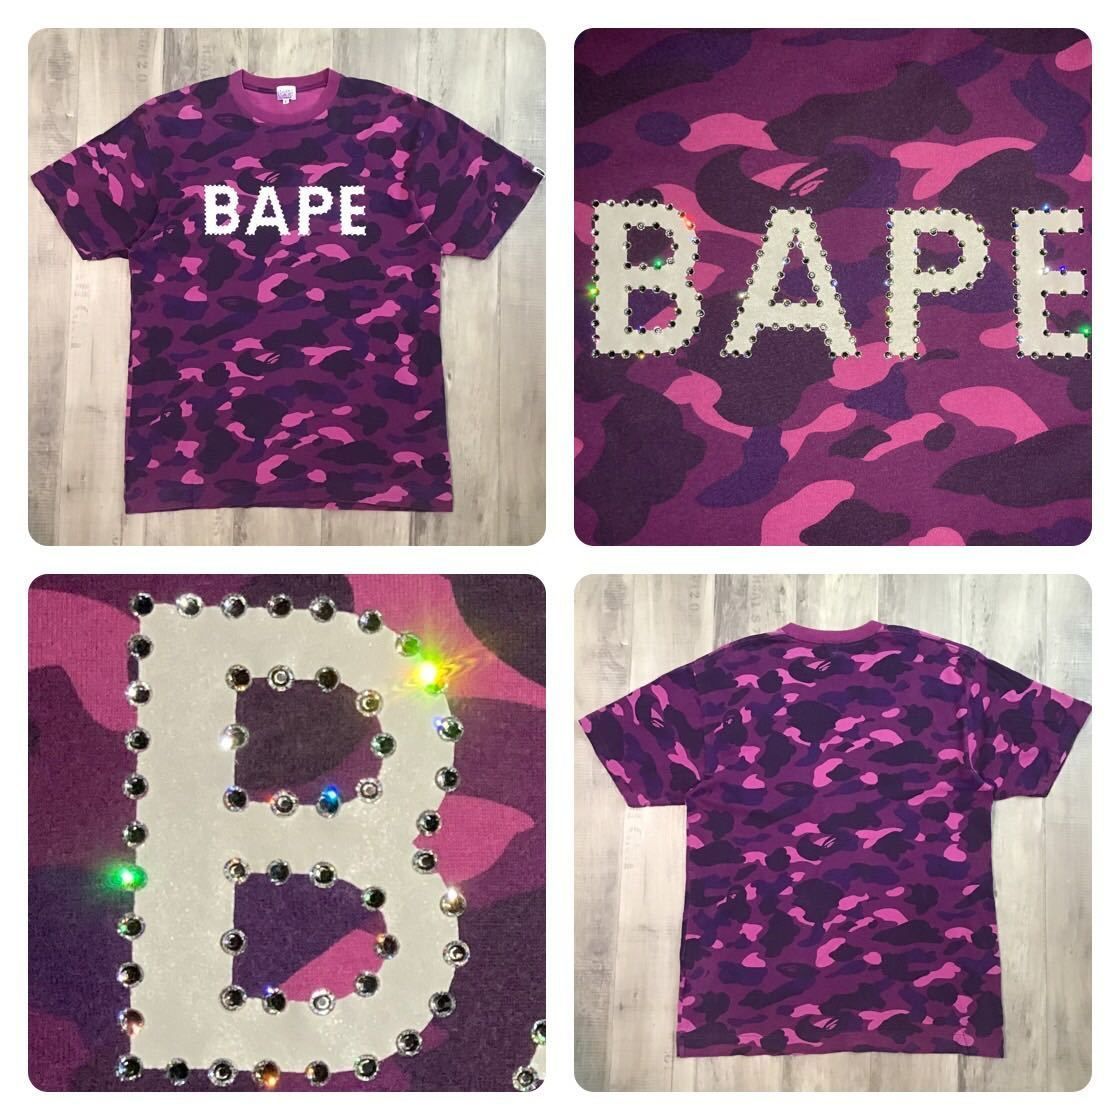 スワロフスキー BAPE logo Tシャツ Lサイズ Purple camo a bathing ape